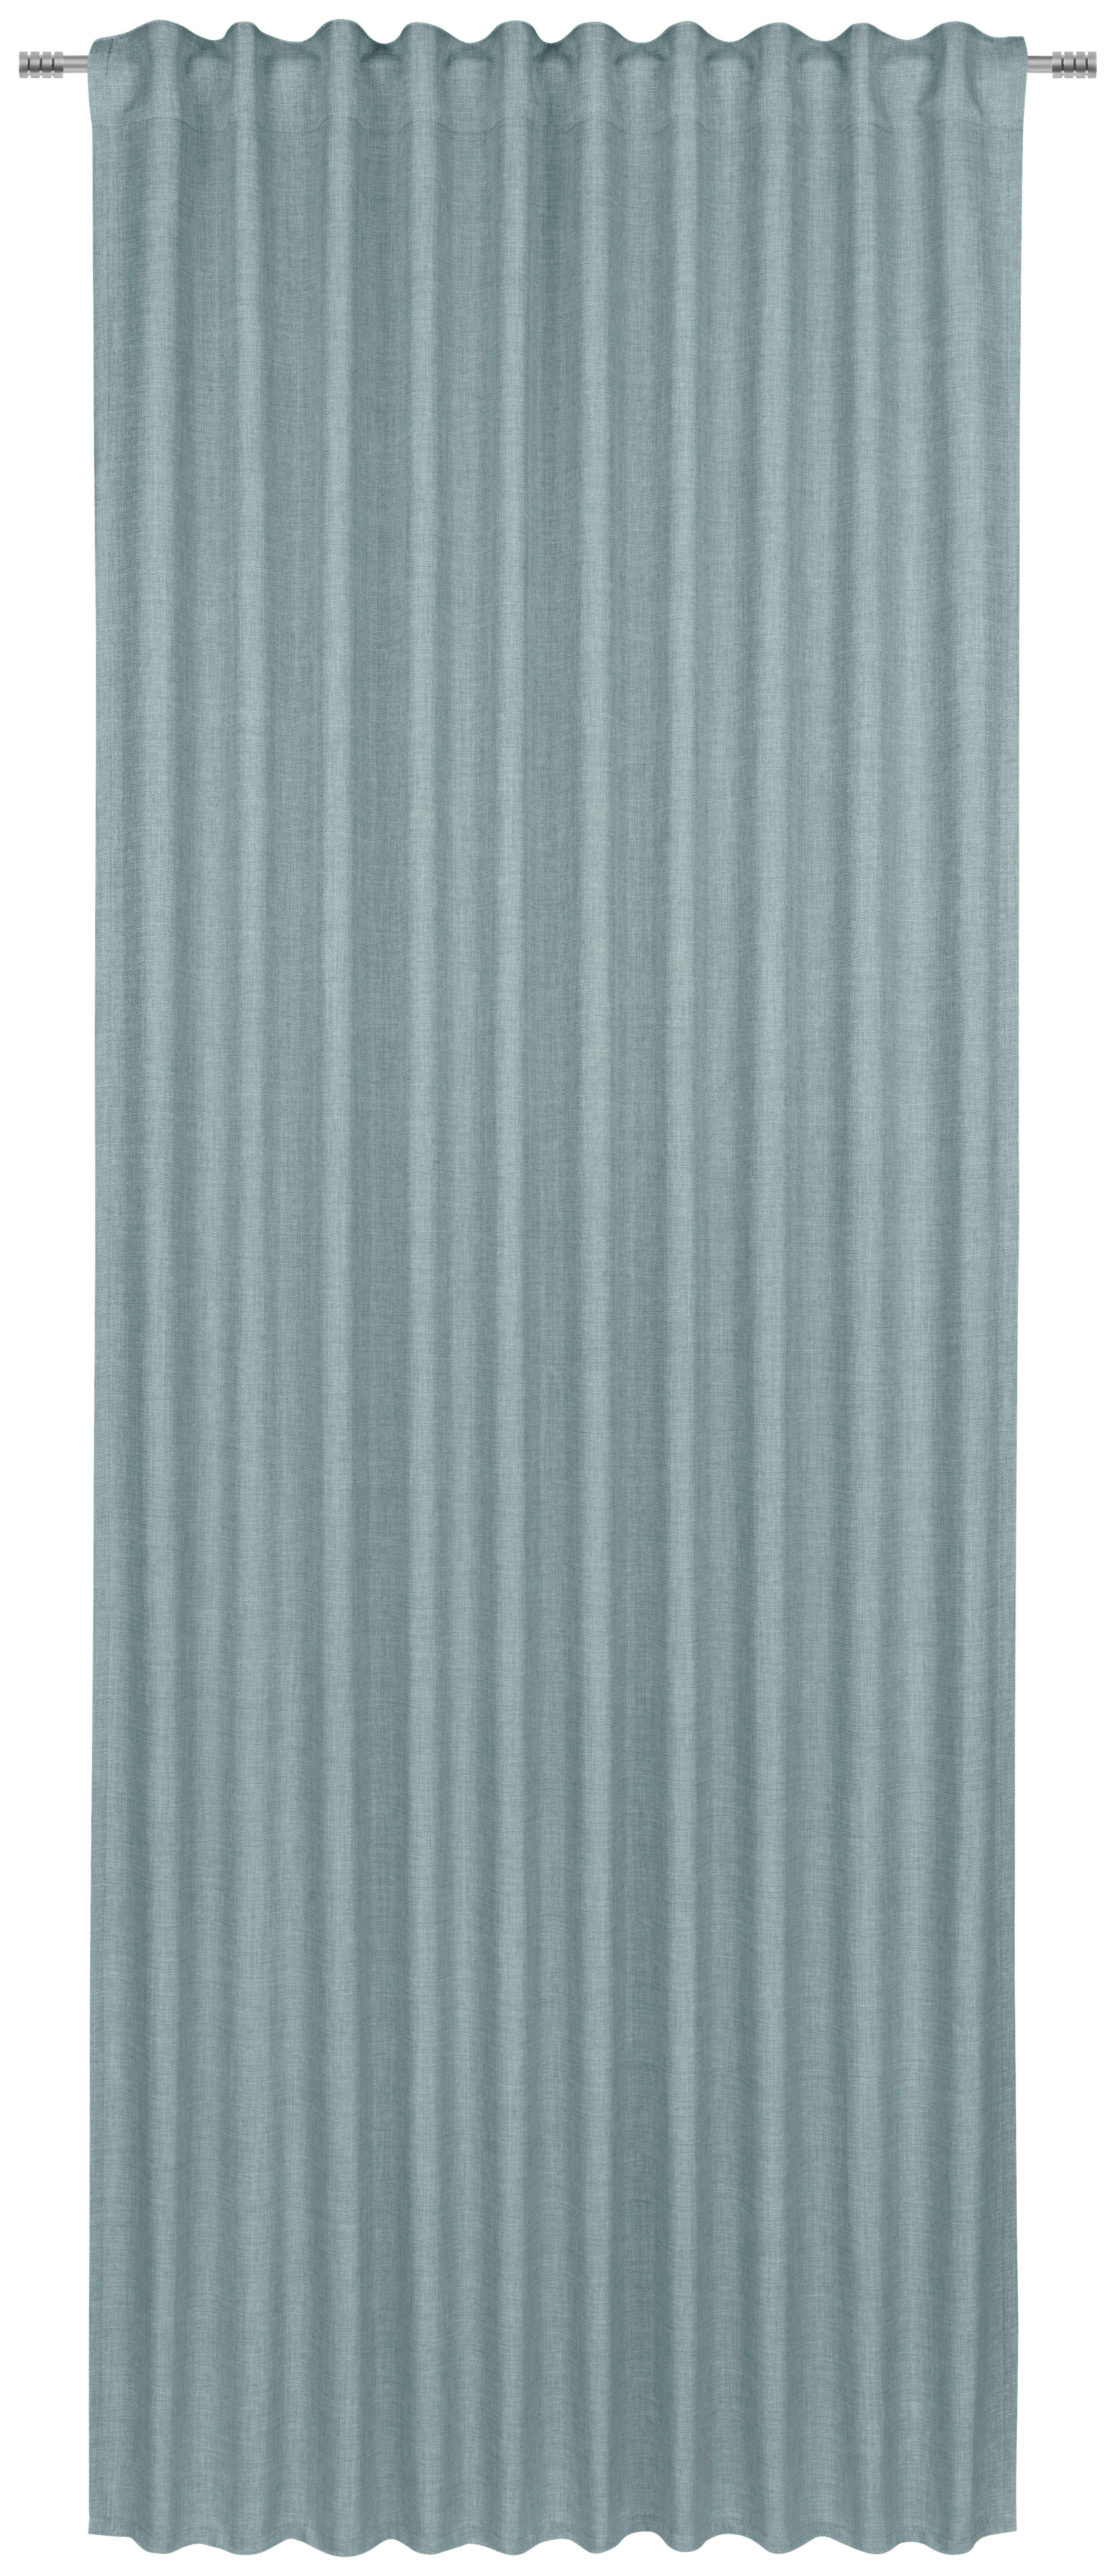 GOTOVA ZAVESA sivo-plava - sivo-plava, Osnovno, tekstil (140/245cm) - Boxxx